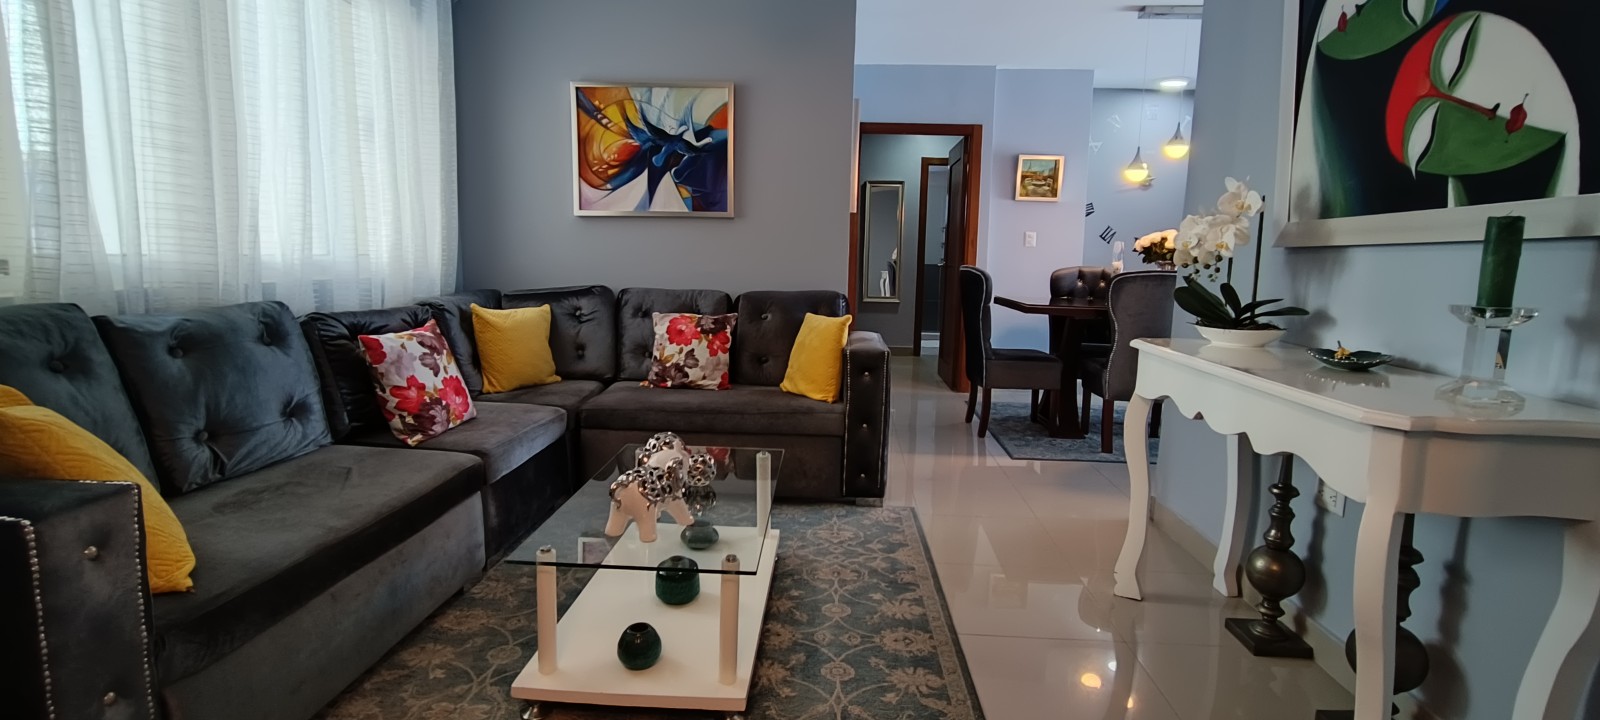 apartamentos - Airbnb AMUEBLADO en villa Olga seguro y confort 8